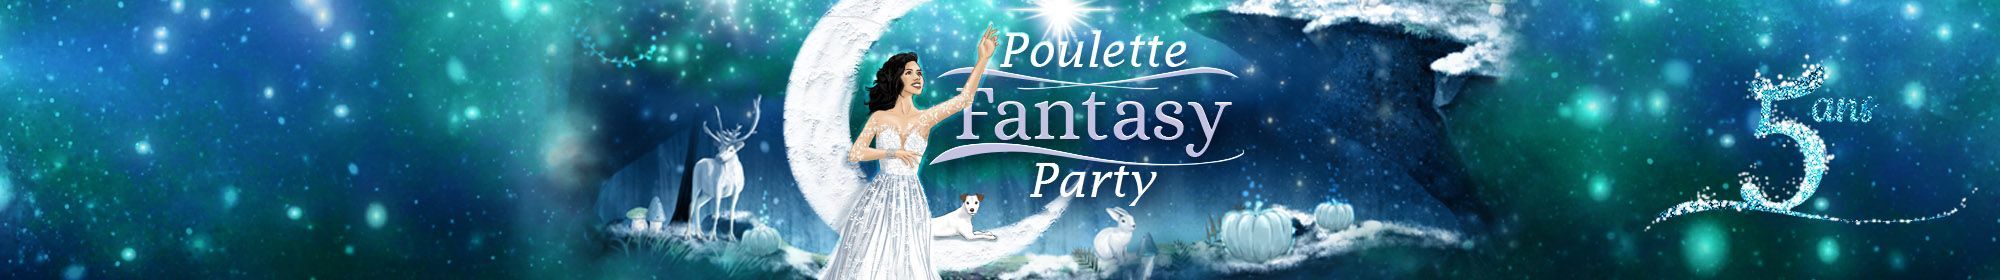 Poulette Fantasy Party